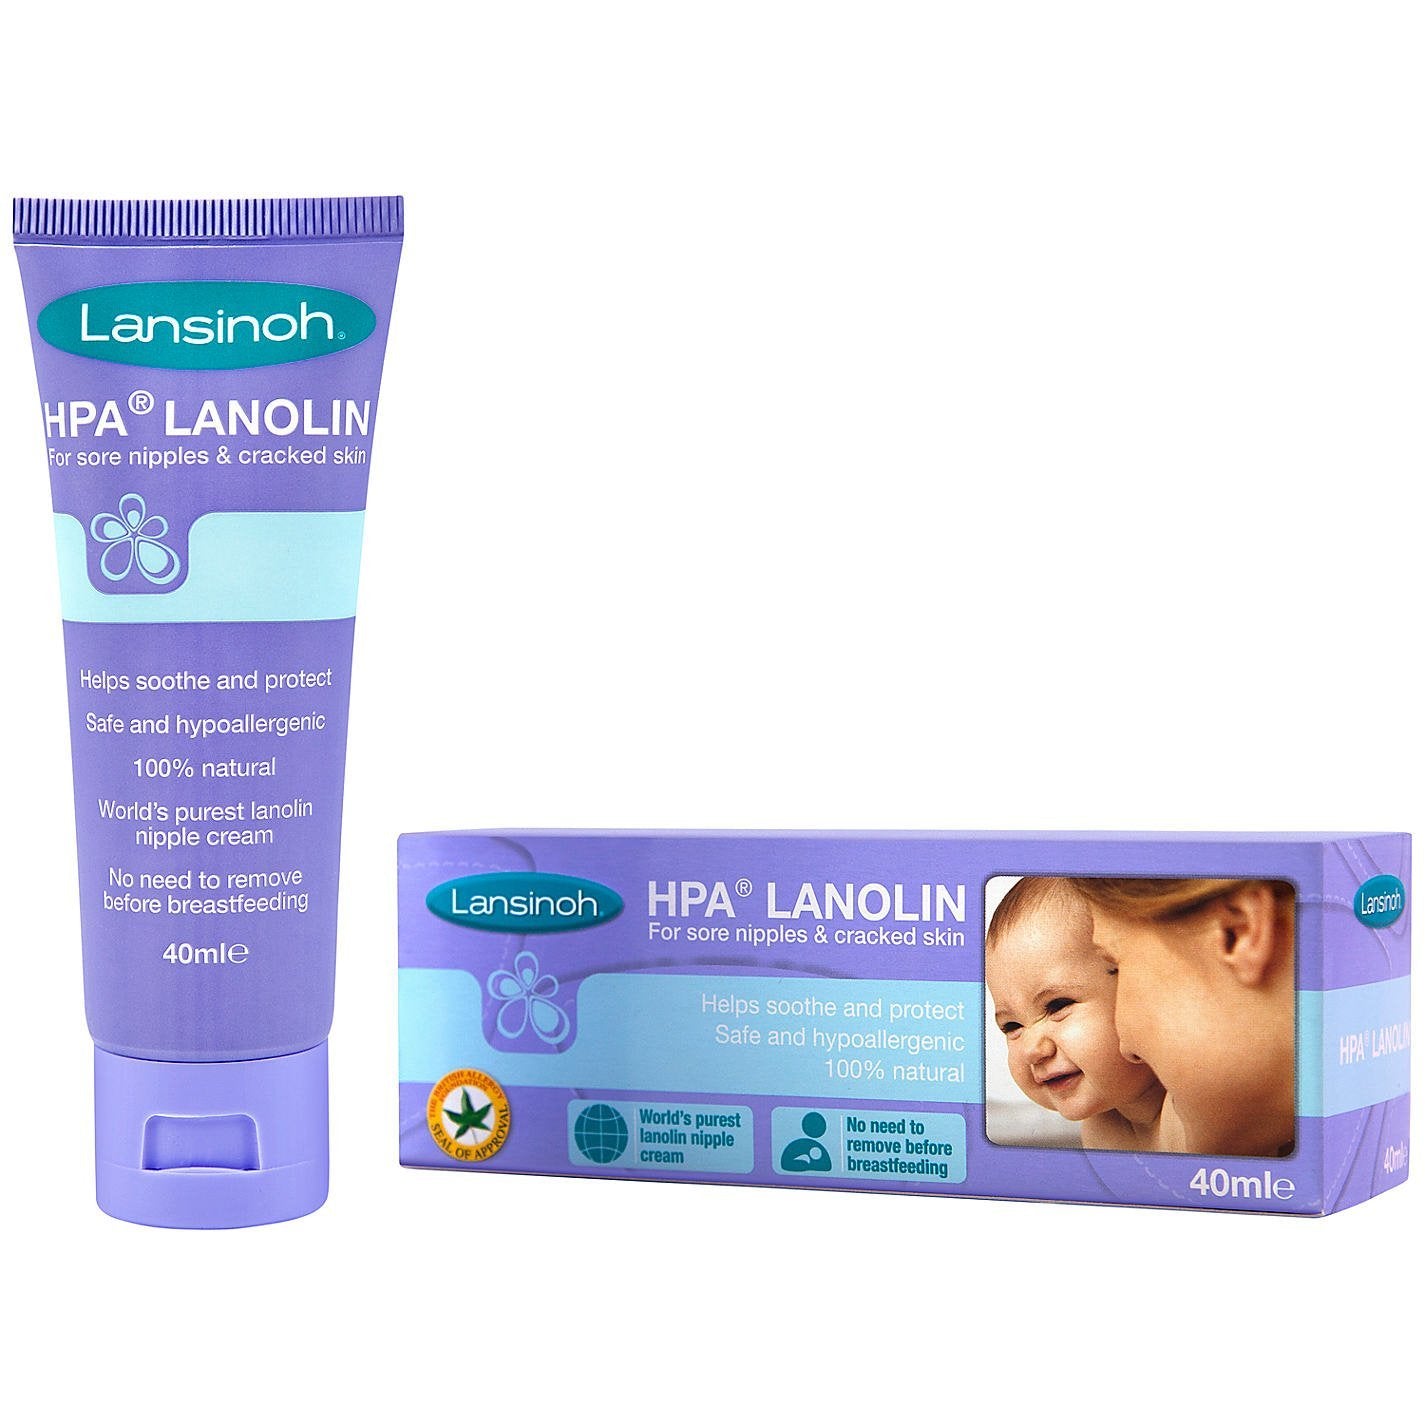 Lansinoh HPA Lanolin Cream for Breastfeeding Mothers-40g